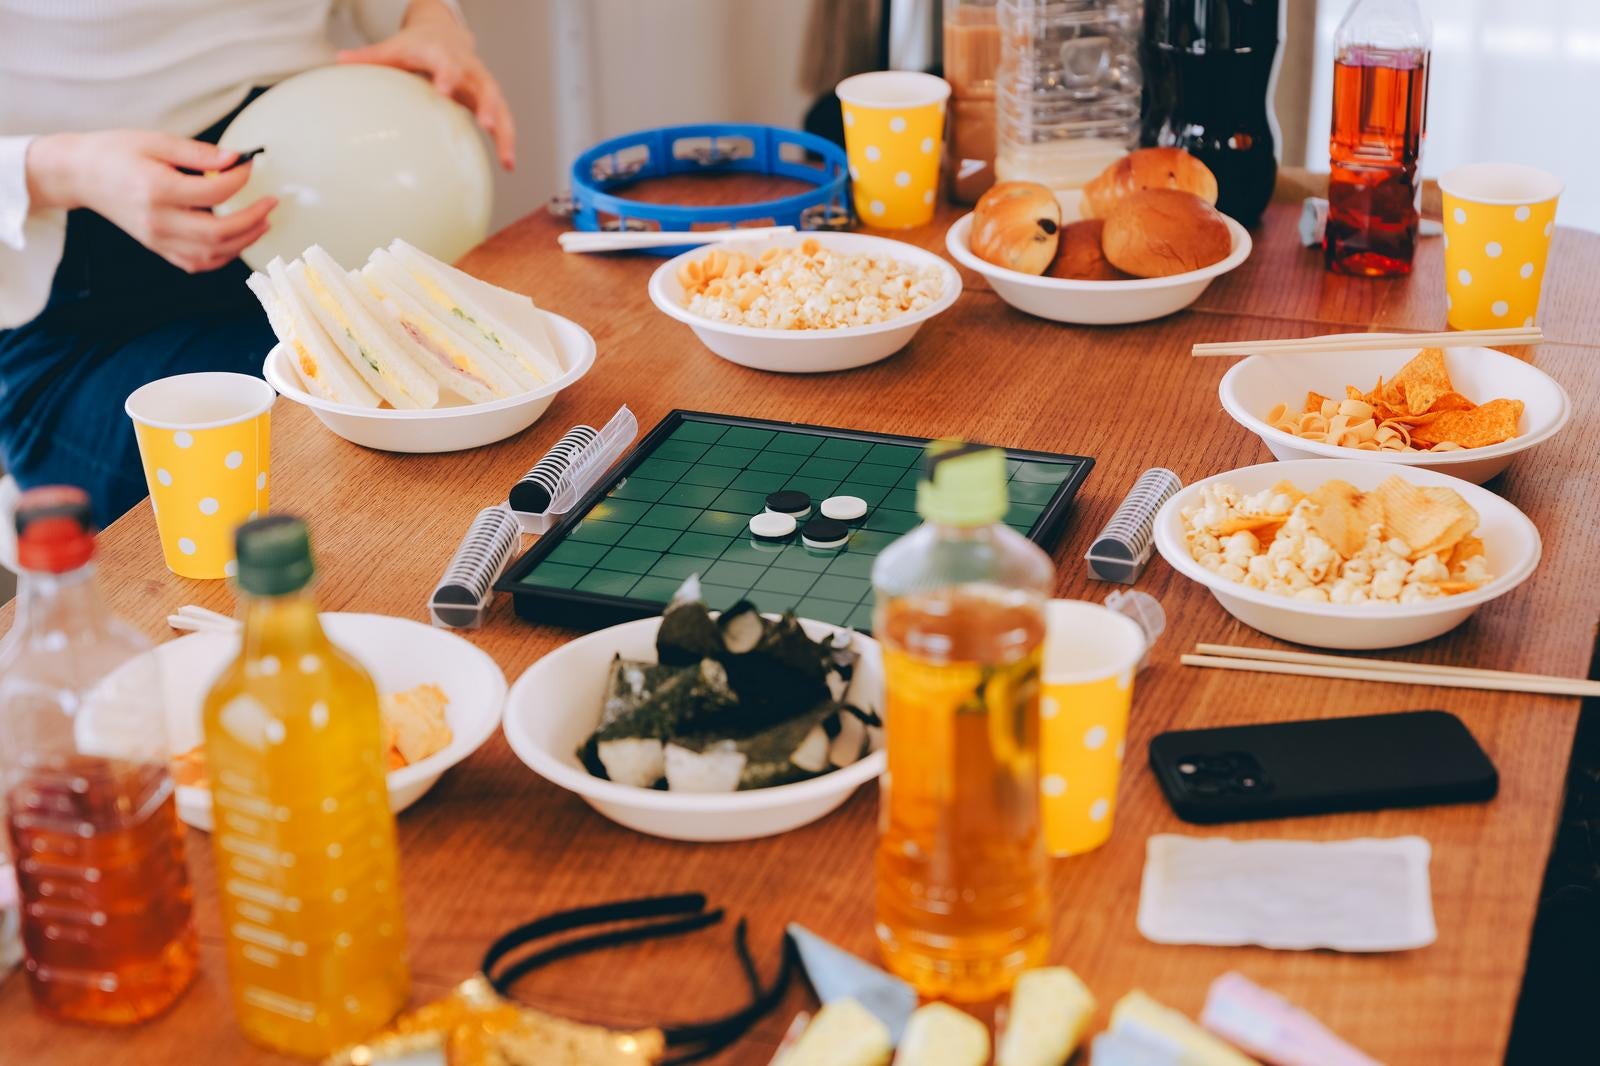 「ホームパーティーのテーブル上のお菓子や食べ物」の写真